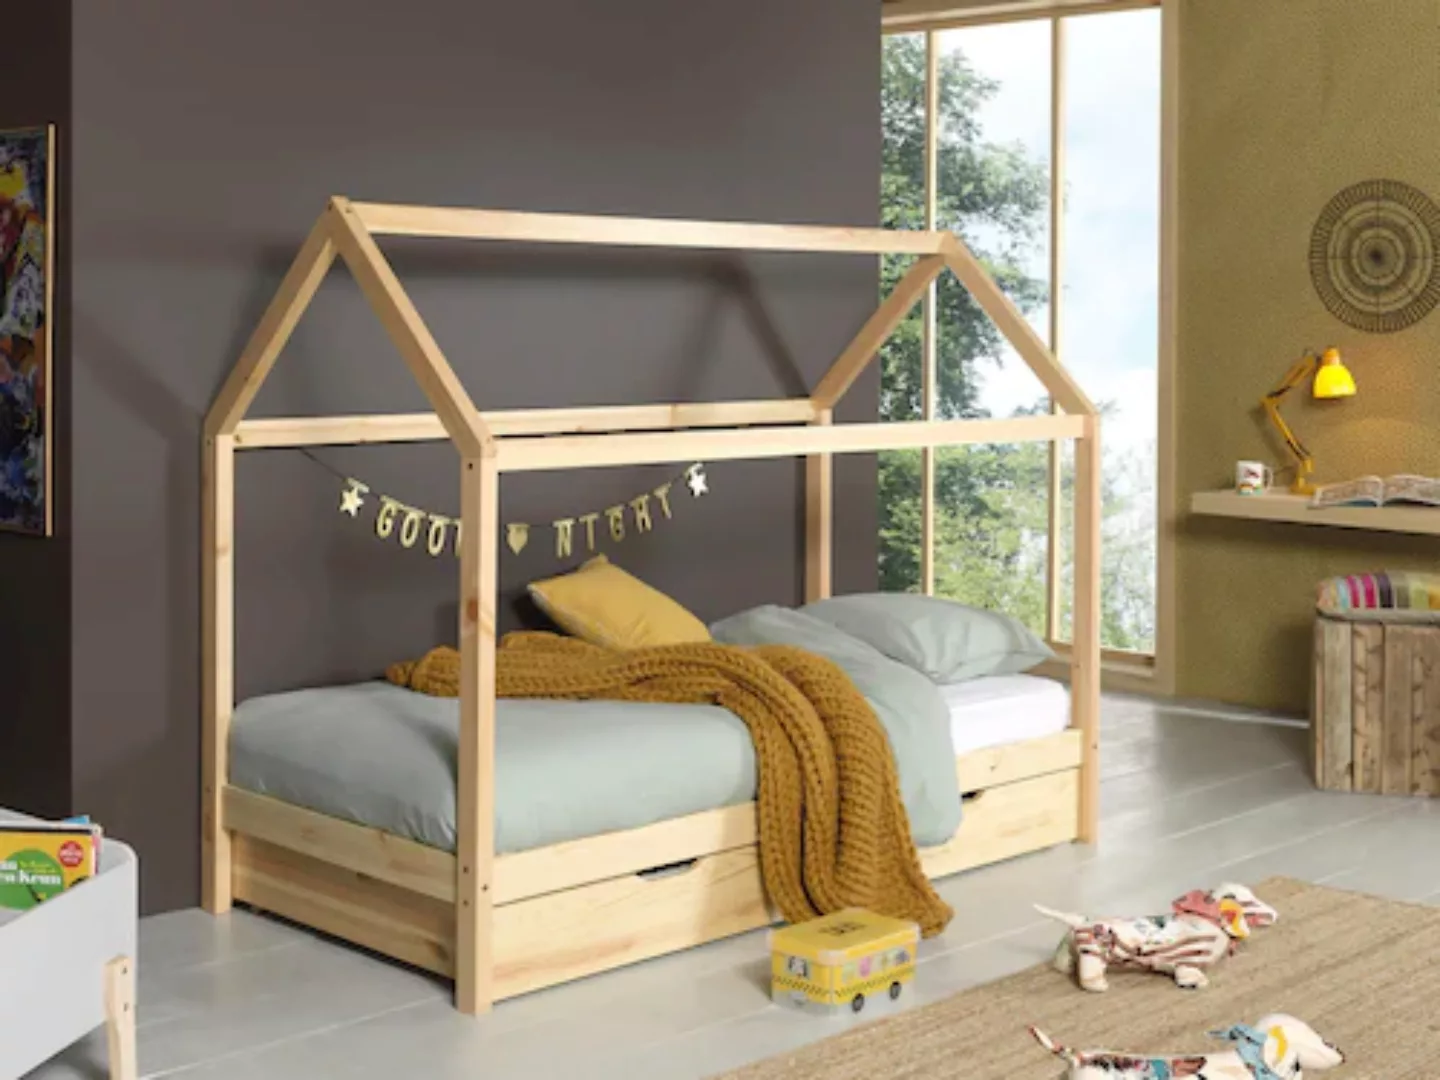 Vipack Hausbett Dallas (Made in Europe), Ein Hausbett in Massivholz mit Lat günstig online kaufen